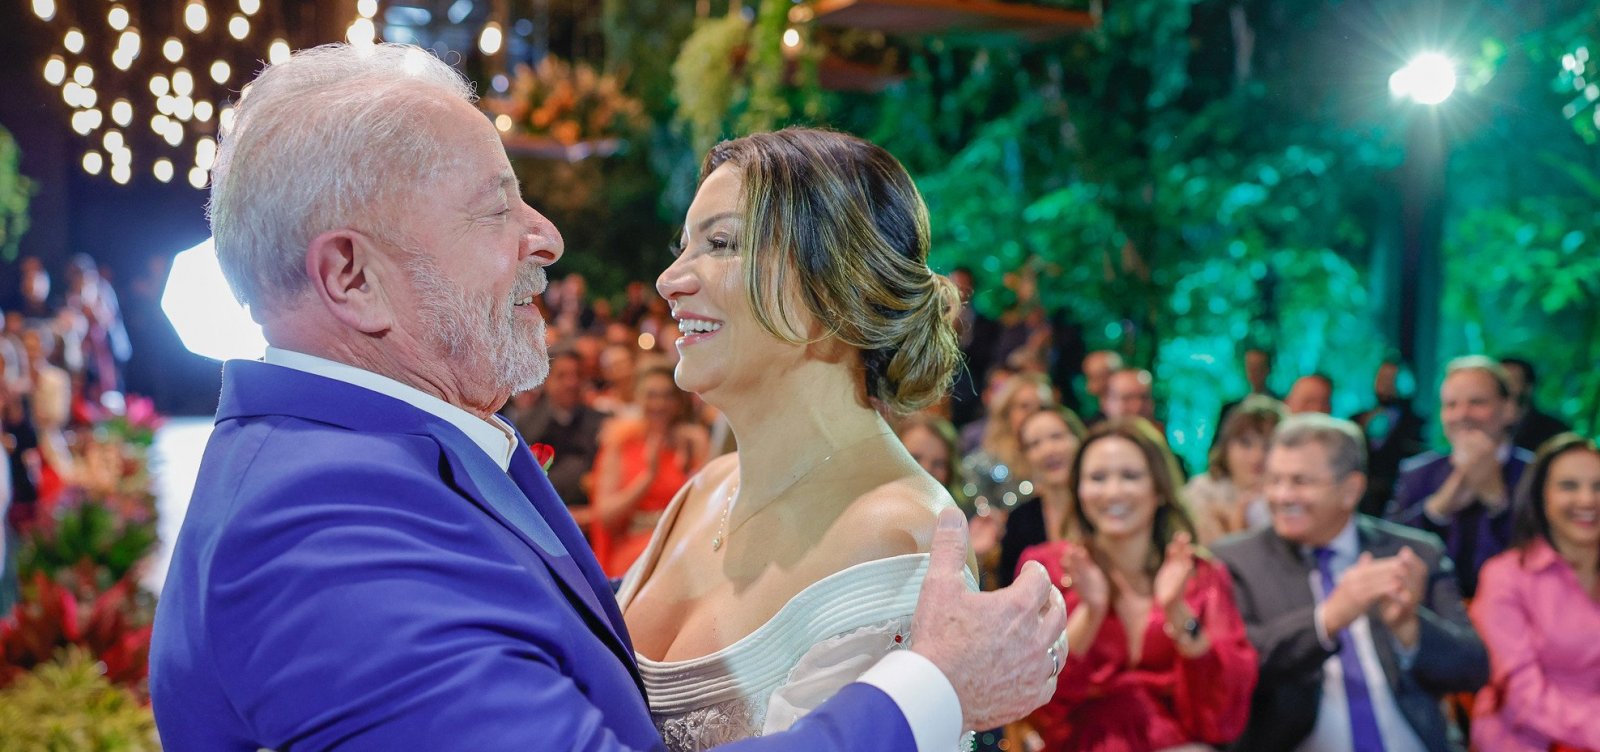 Nova versão do jingle "Lula lá" embalou casamento de Lula e Janja